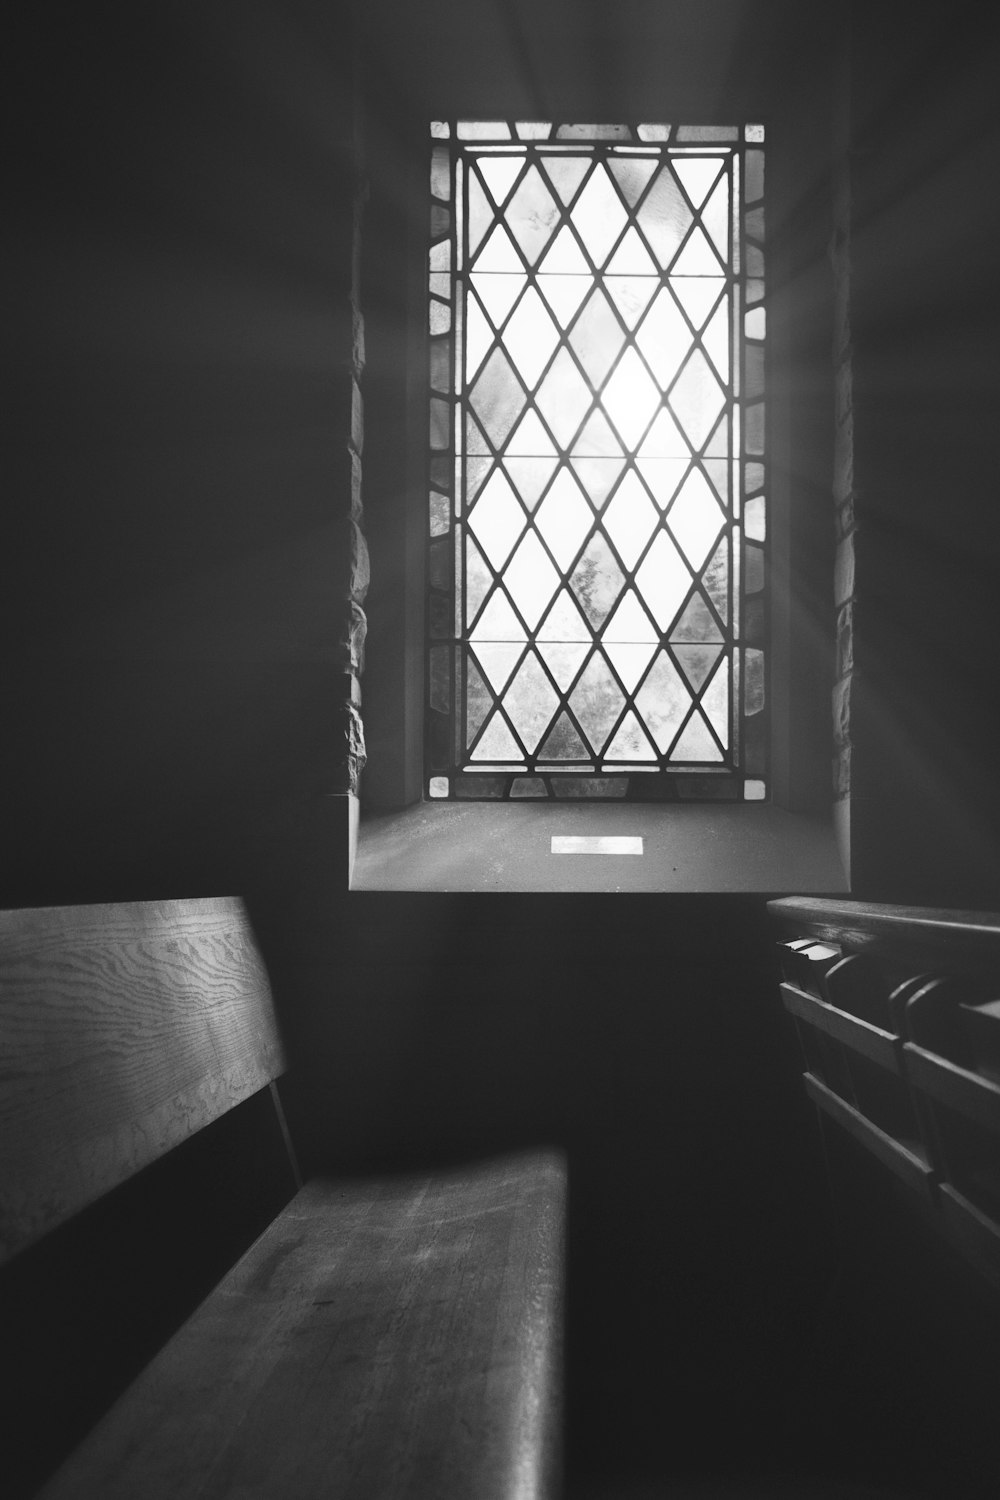 Una foto in bianco e nero di una finestra della chiesa